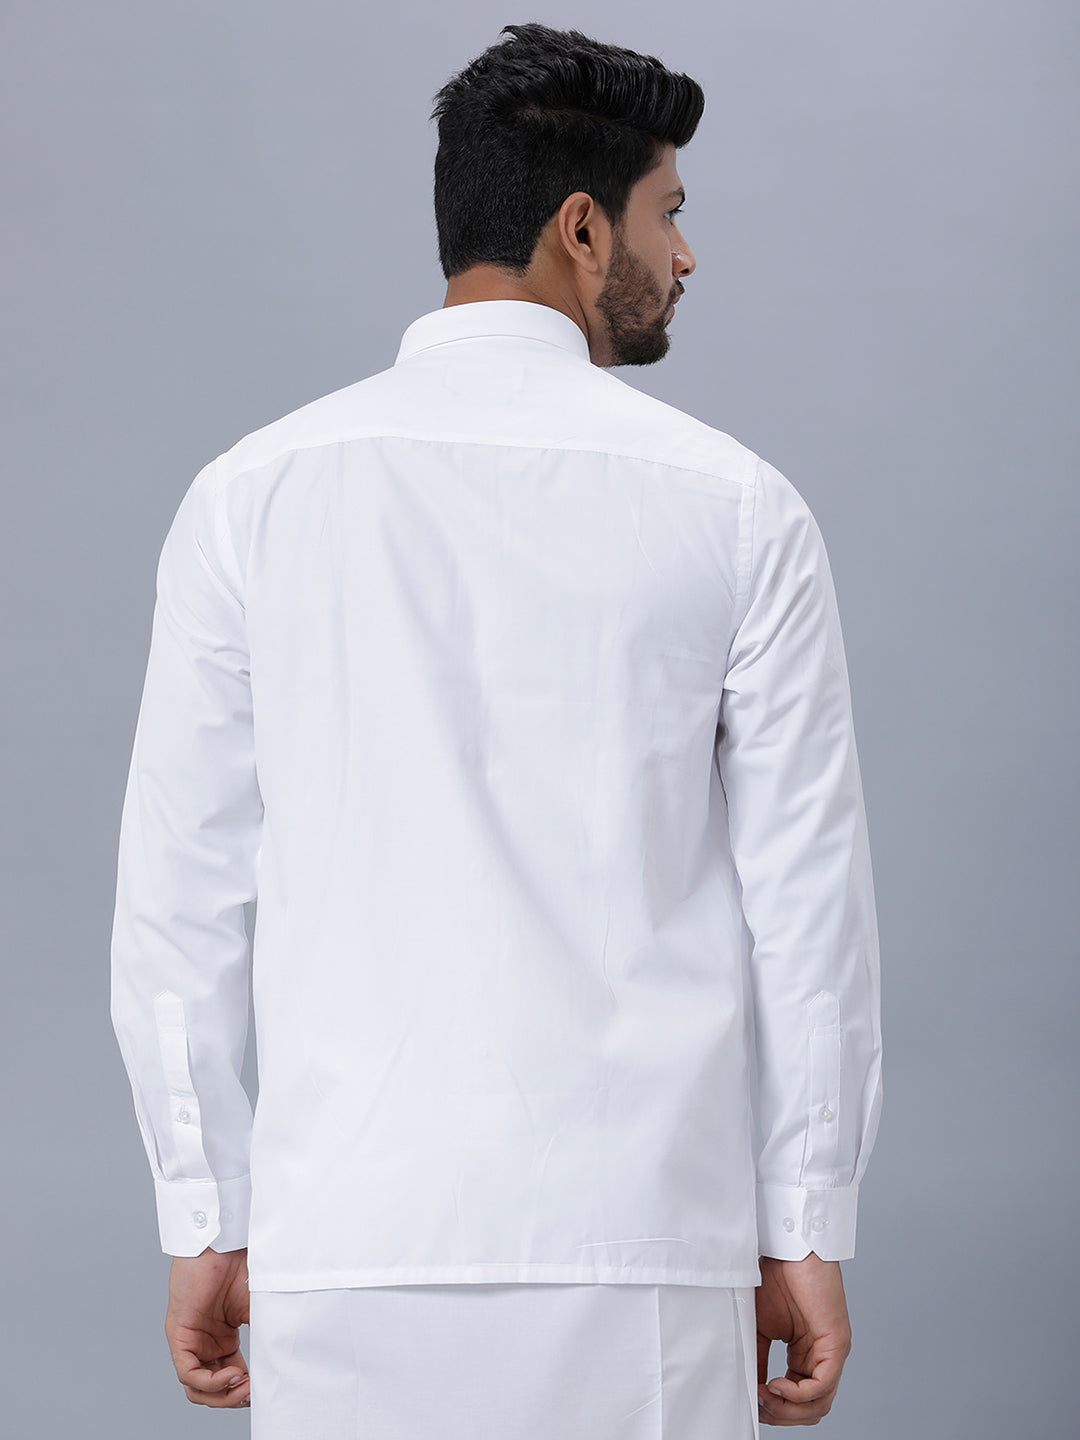 Mens Cotton Blended Full Sleeve White Shirt Mist -Back view